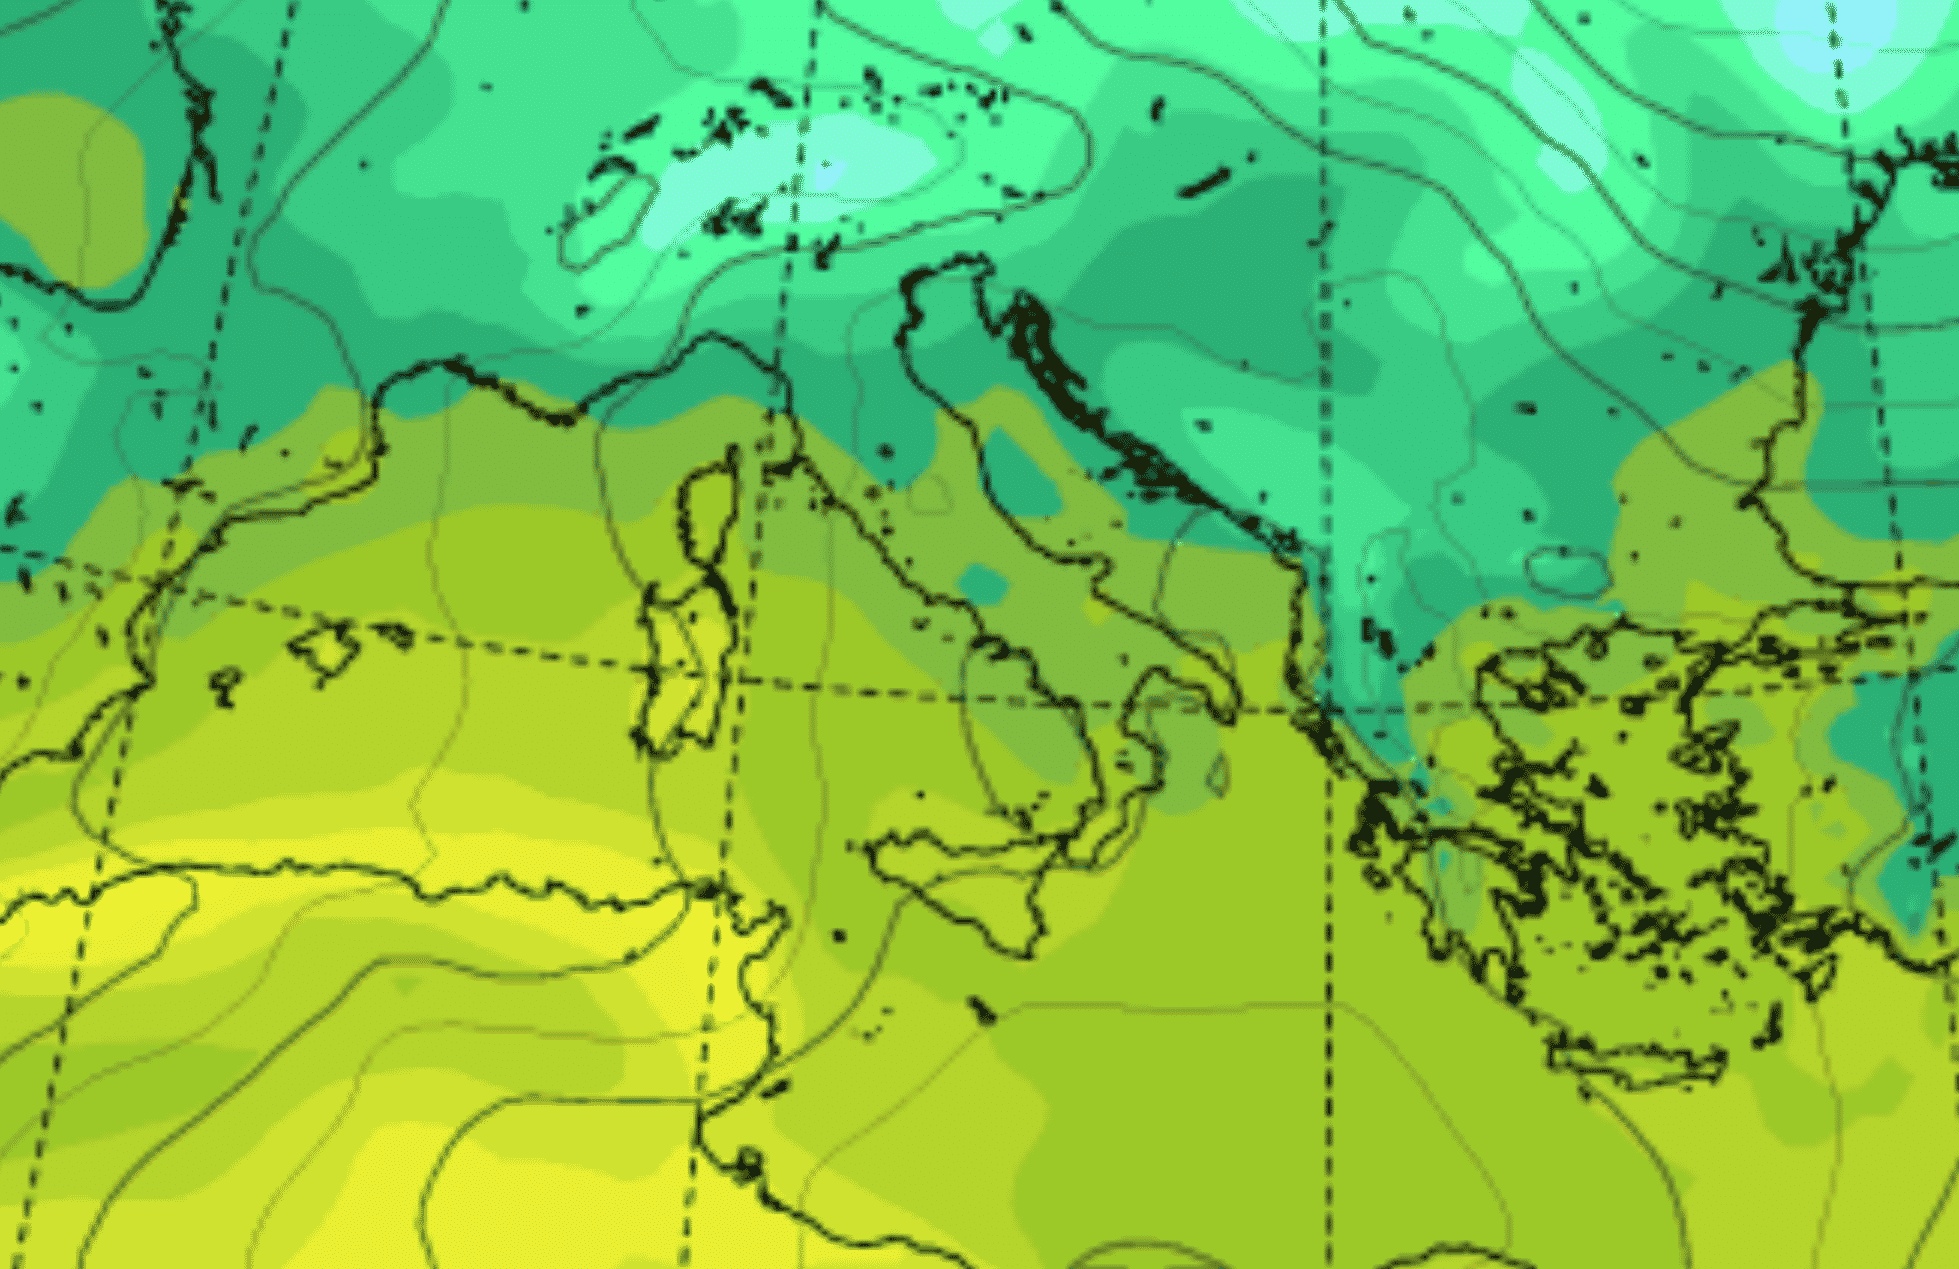 Meteo Sicilia domani, in arrivo anticiclone nordafricano: sole e temperature oltre 20°C